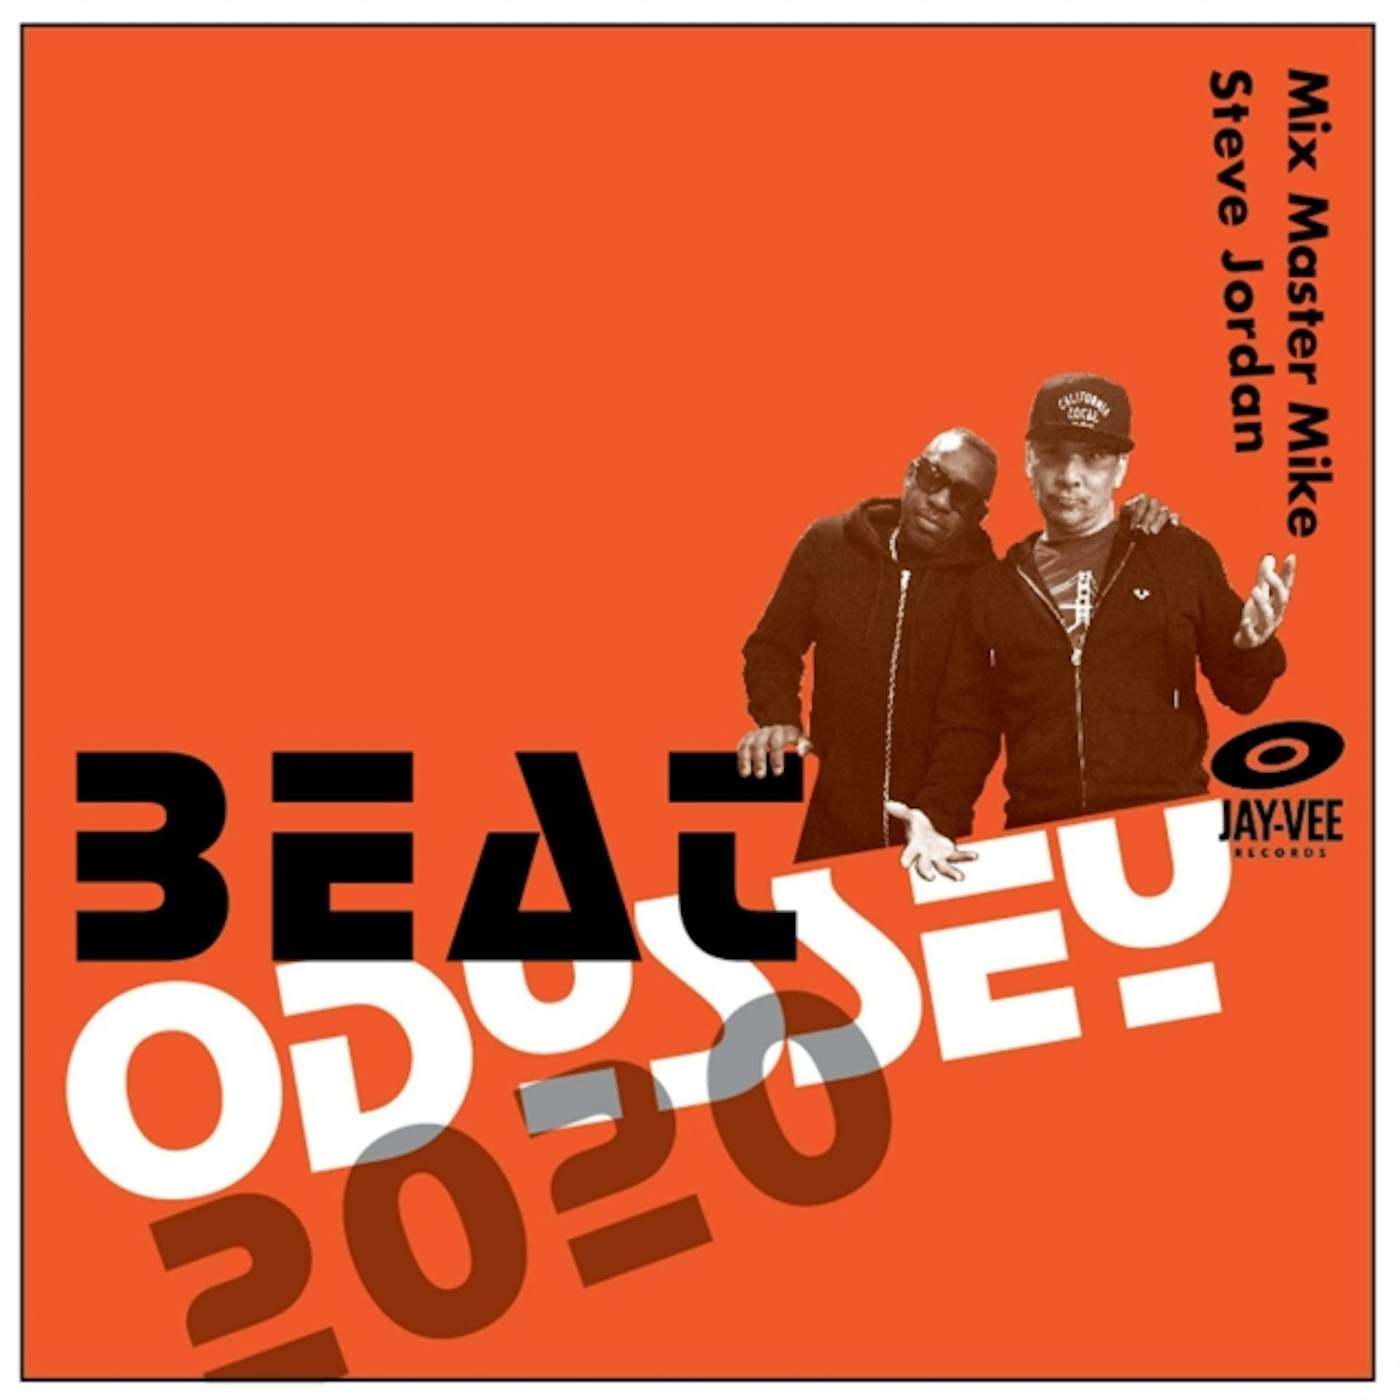 Mix Master Mike / Steve Jordan BEAT ODYSSEY 2020 Vinyl Record